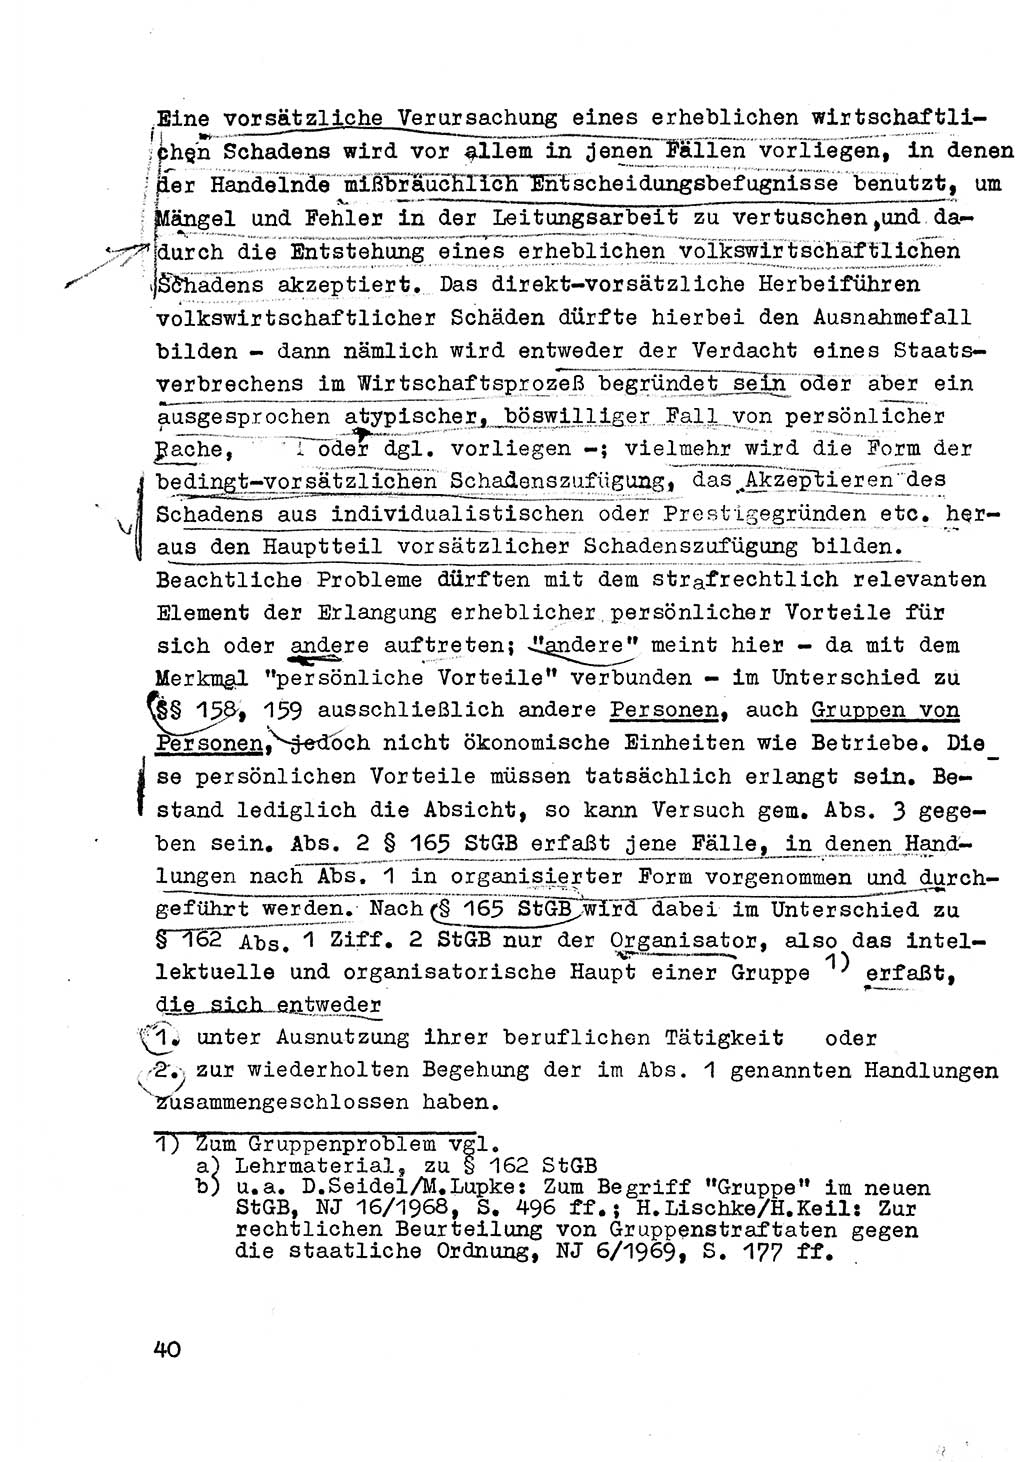 Strafrecht der DDR (Deutsche Demokratische Republik), Besonderer Teil, Lehrmaterial, Heft 6 1970, Seite 40 (Strafr. DDR BT Lehrmat. H. 6 1970, S. 40)